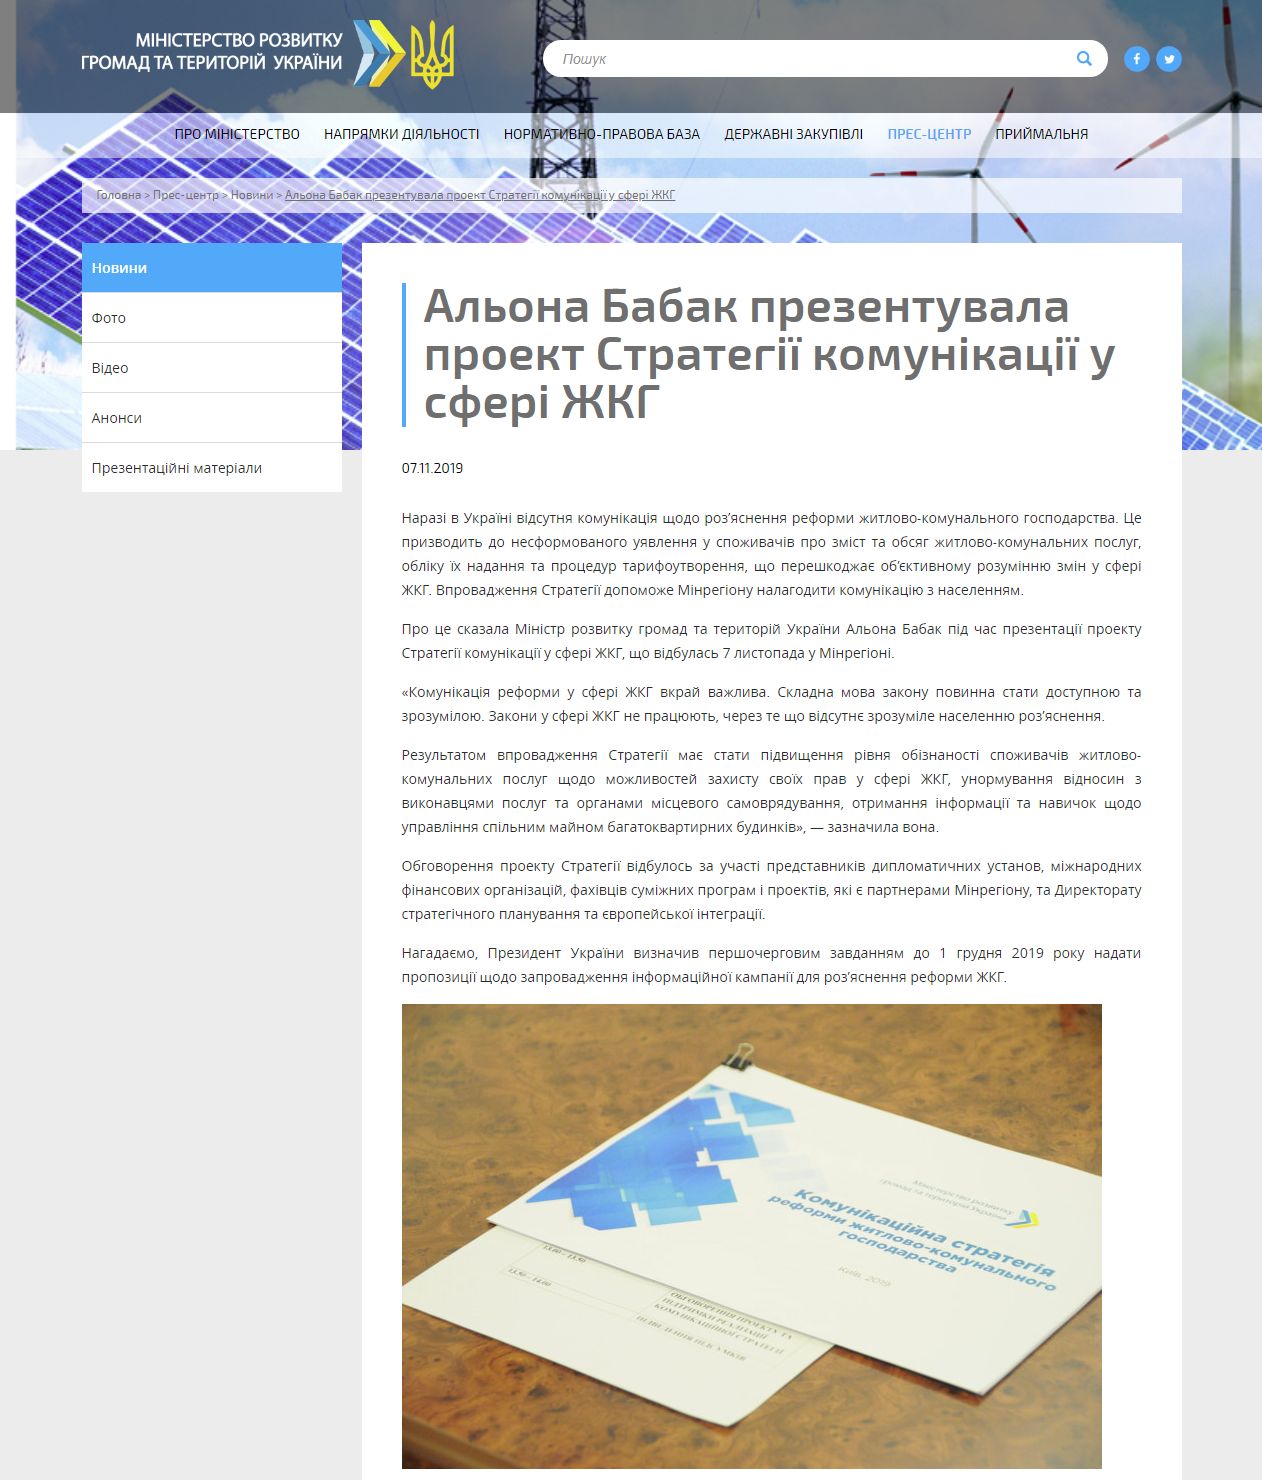 http://www.minregion.gov.ua/press/news/alona-babak-prezentuvala-proekt-strategiyi-komunikatsiyi-u-sferi-zhkg/